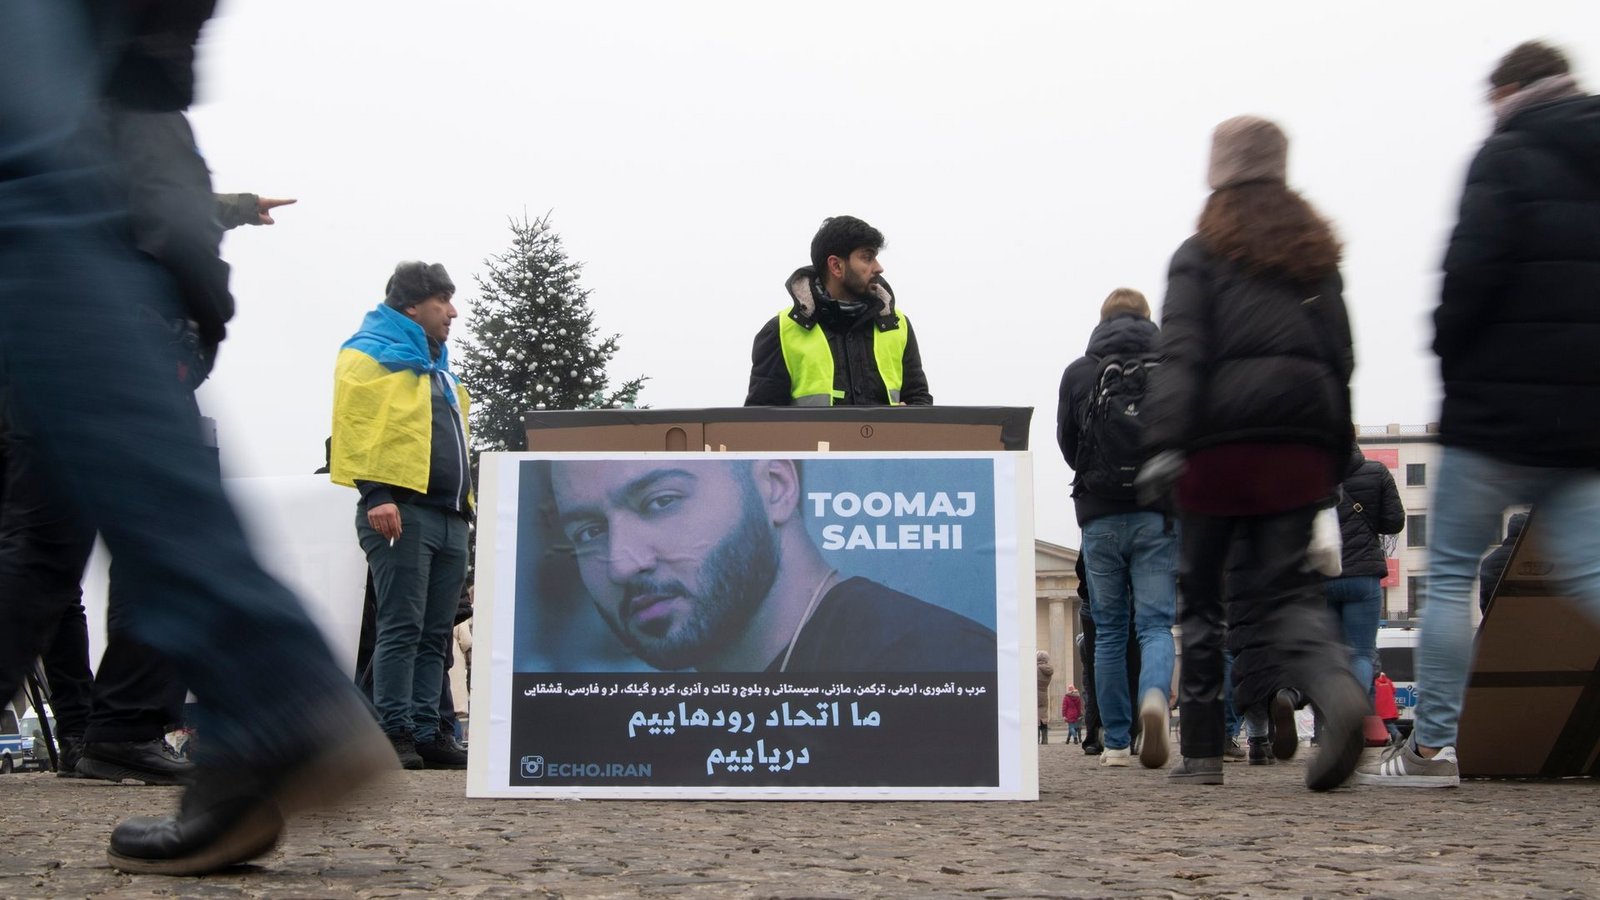 Protestaktion gegen Irans Staatsführung auf dem Pariser Platz in Berlin. Auf dem Plakat ist der Rapper Salehi zu sehen.Foto: Paul Zinken/dpa